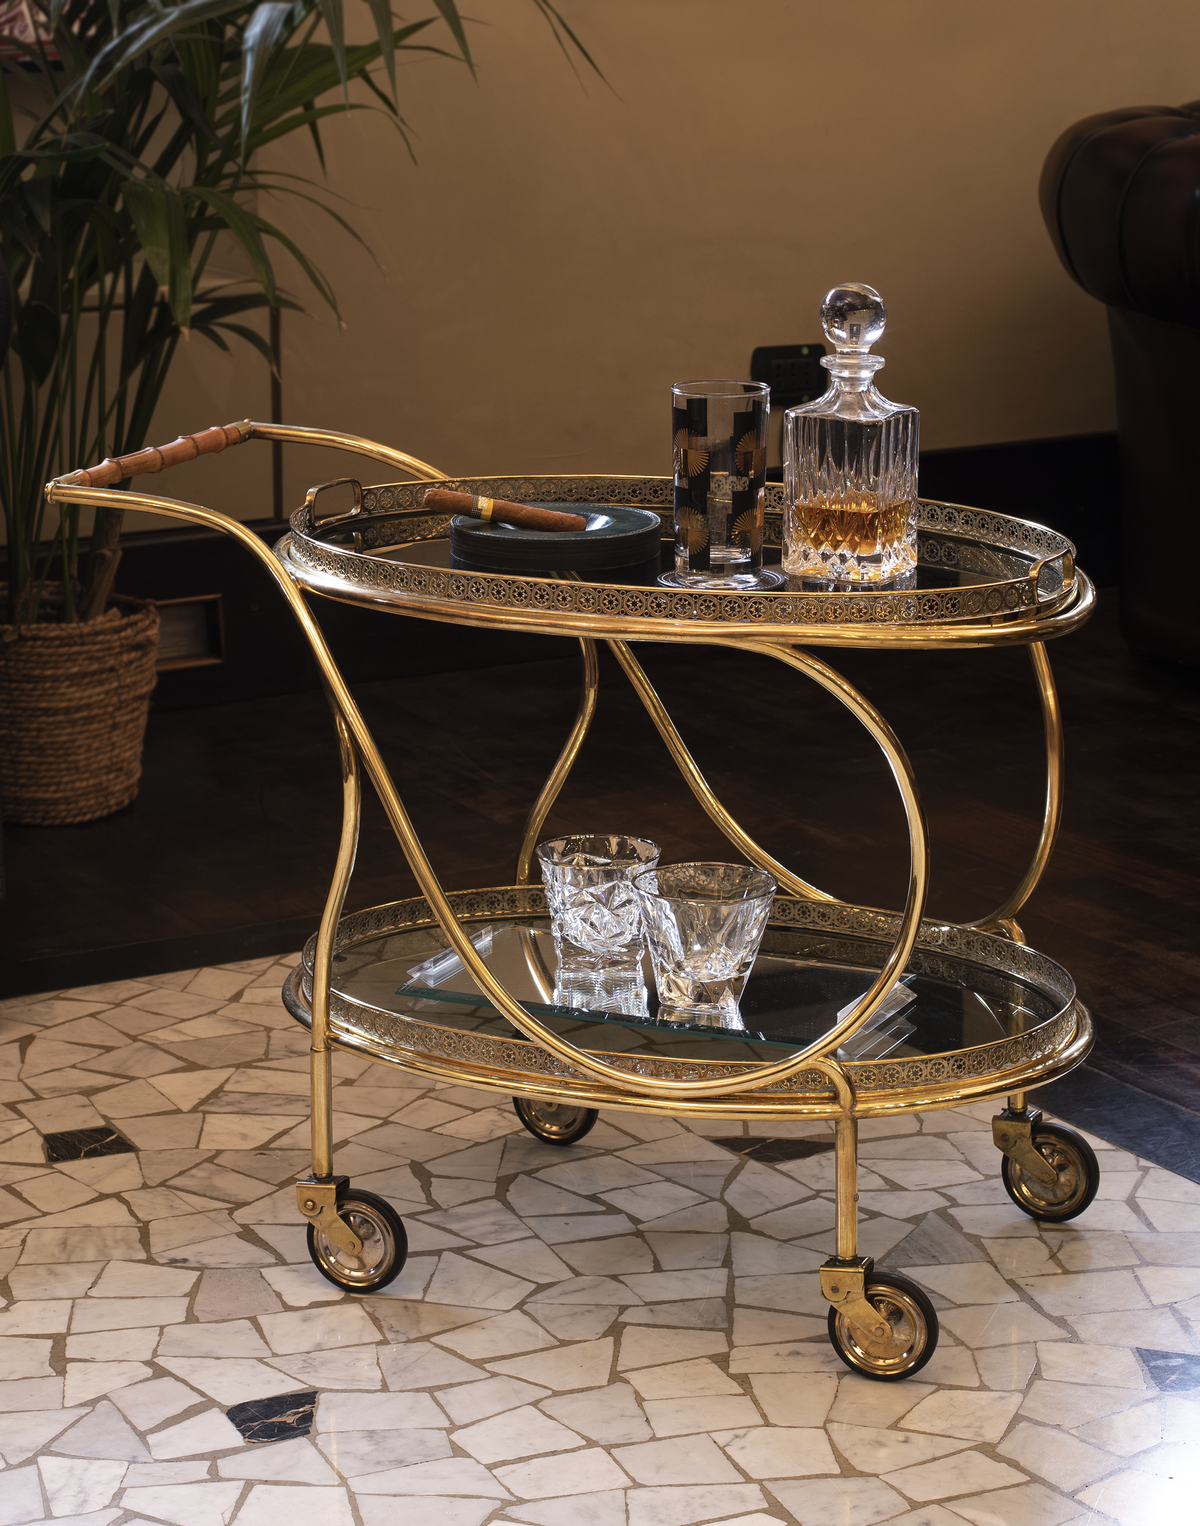 Carrello ovale in ottone dorato modello &quot;Galleria&quot;  - 1950 - Brass Circular “Gallery” bar cart